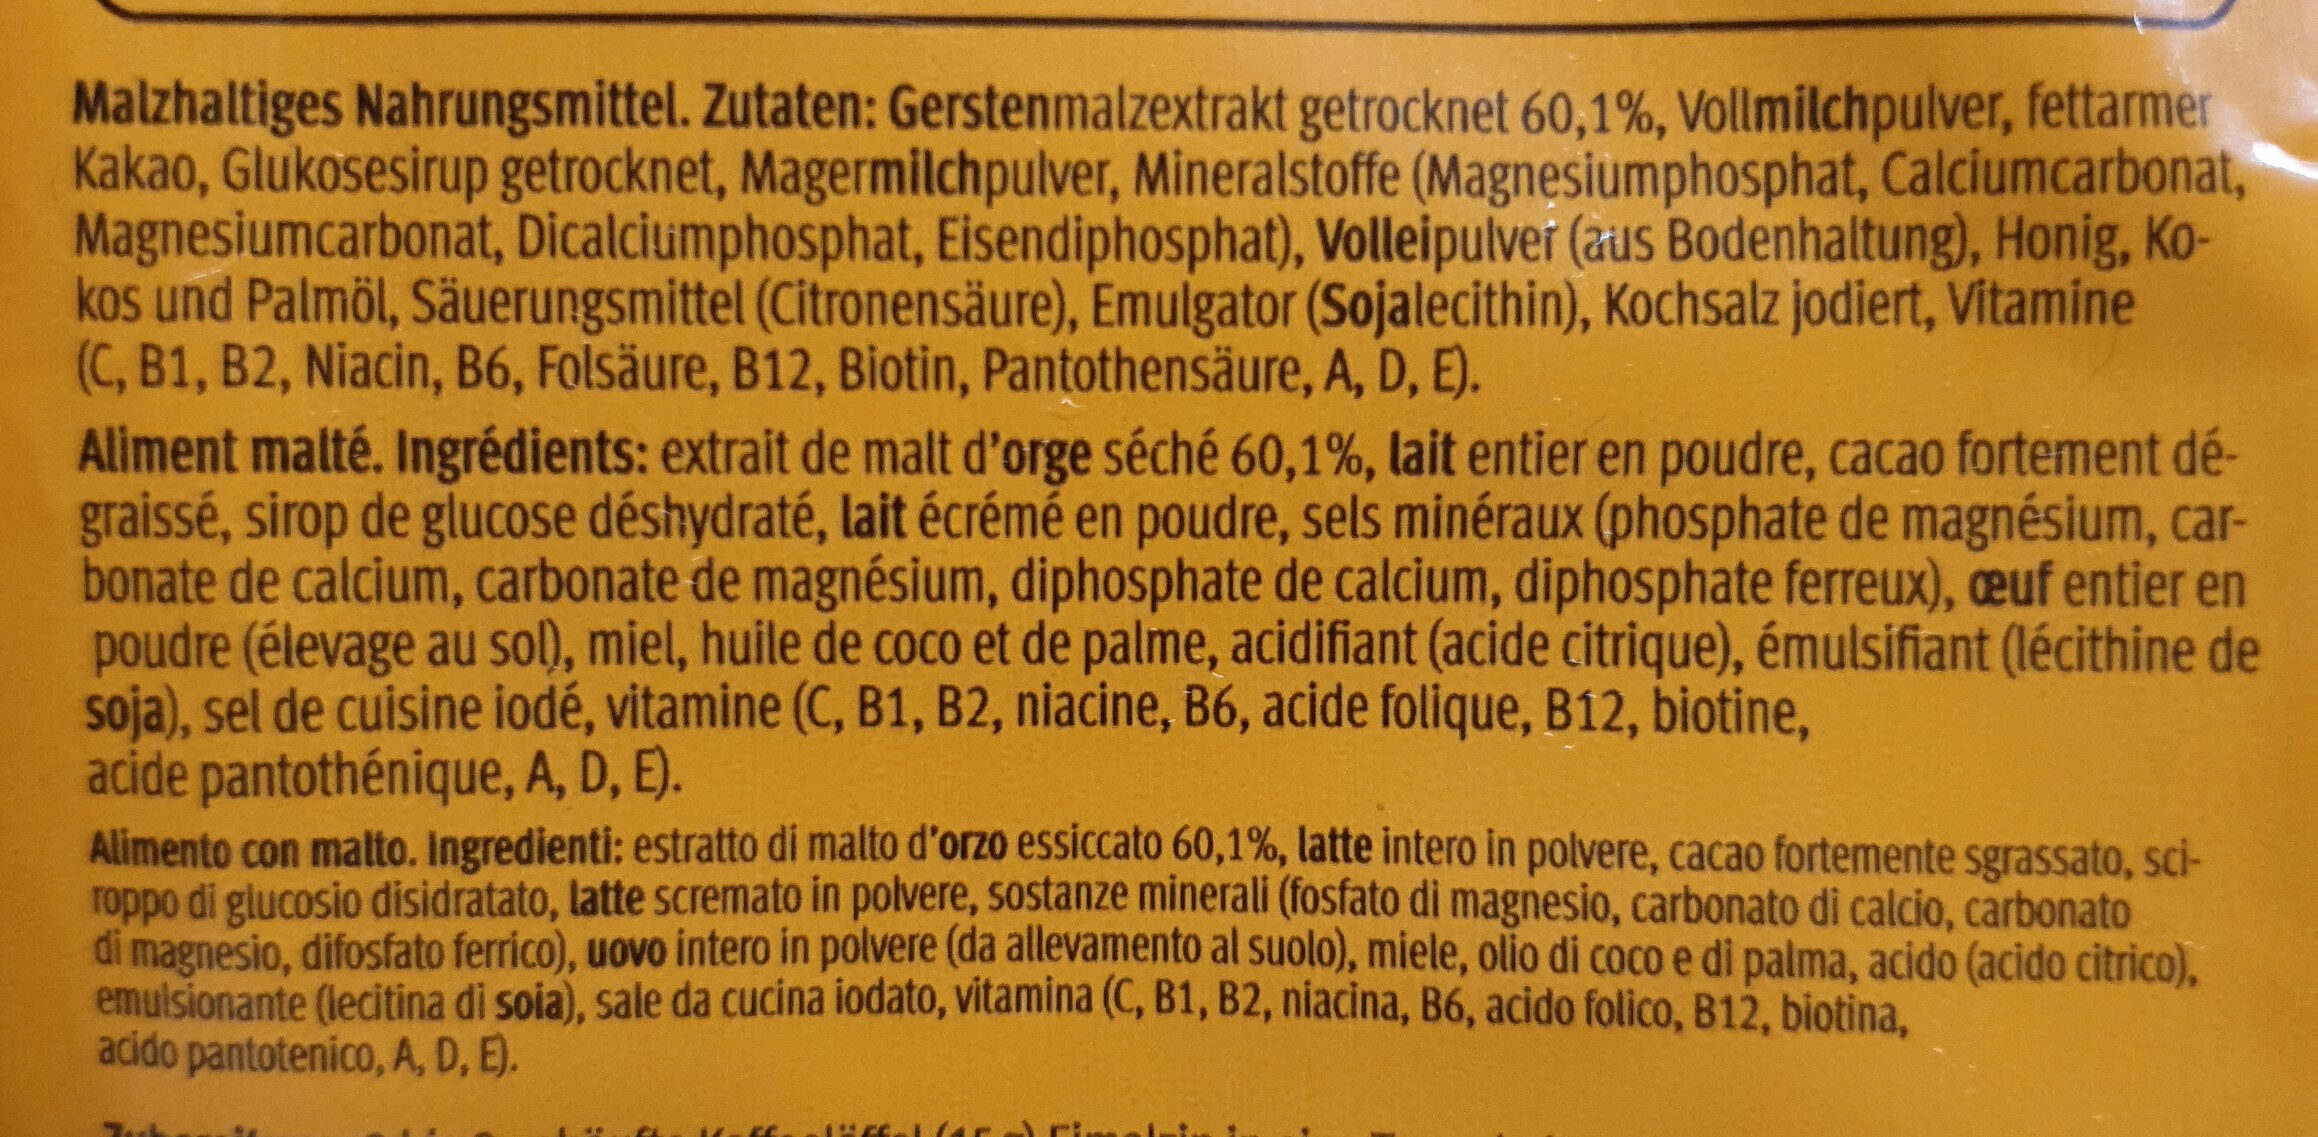 Malzpulver Einmalzin - Ingredienti - fr